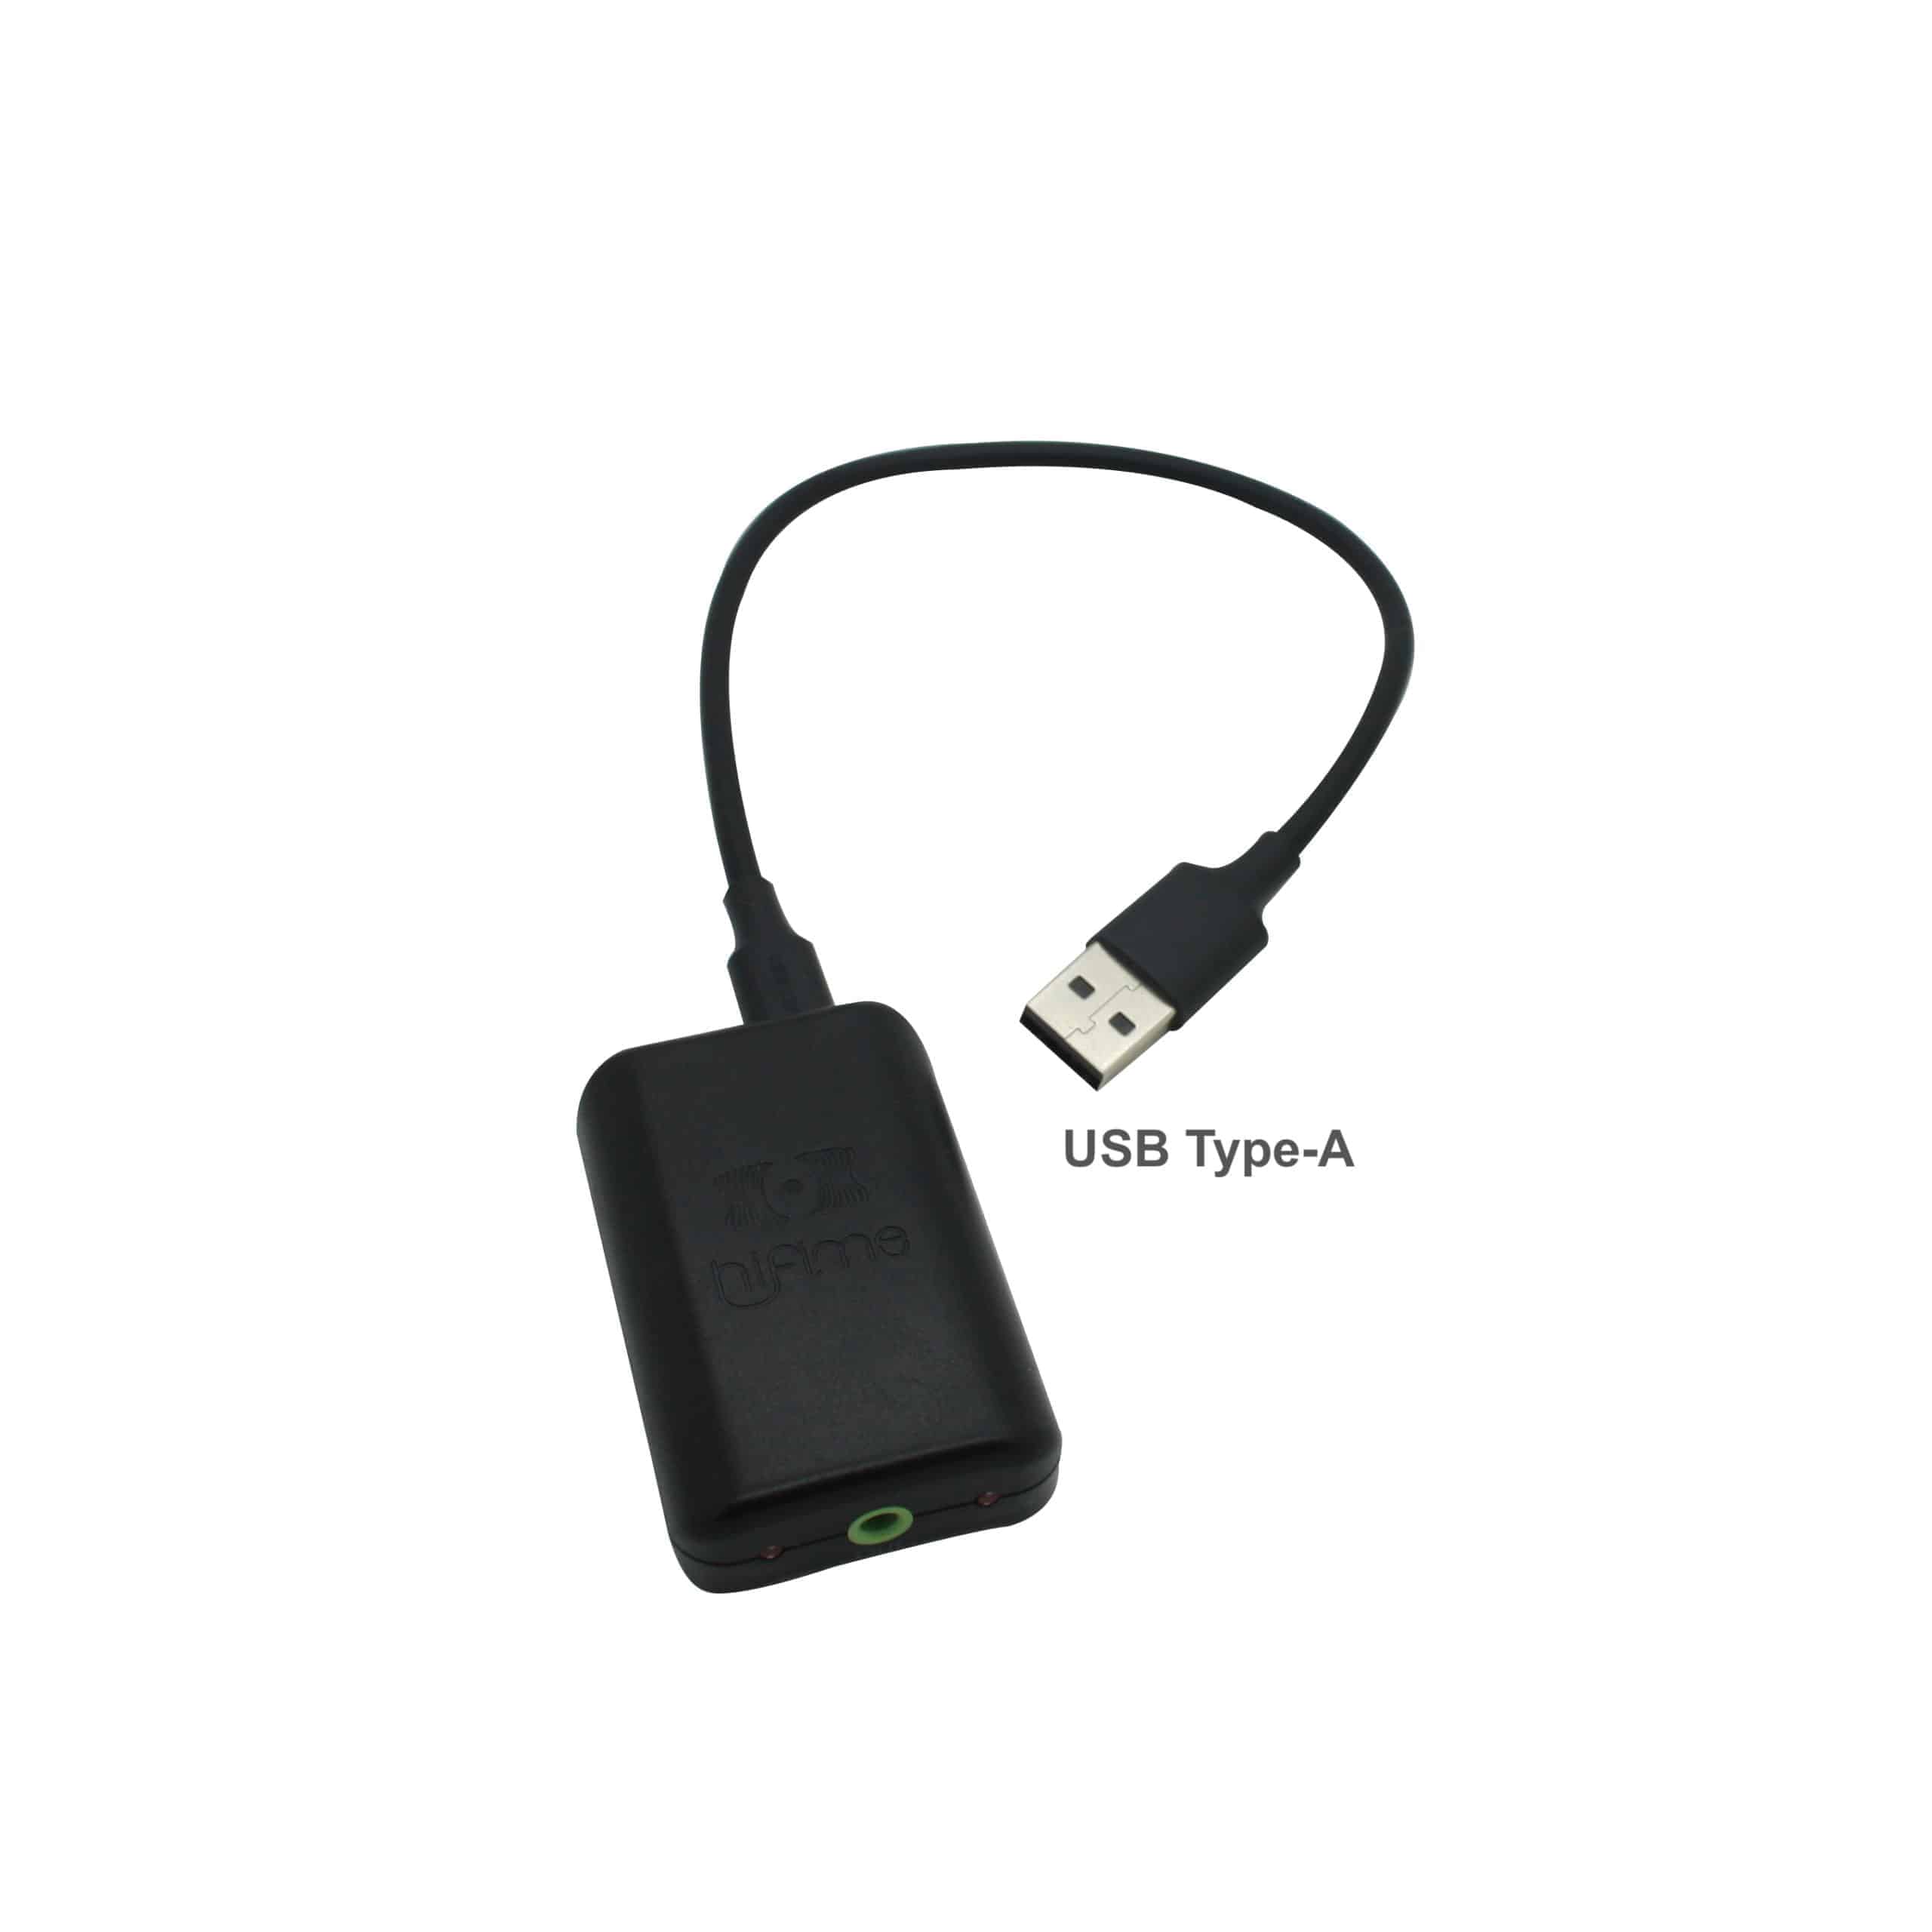 Hifime S2 USB and SPDIF DAC (Sabre ES9038q2m)